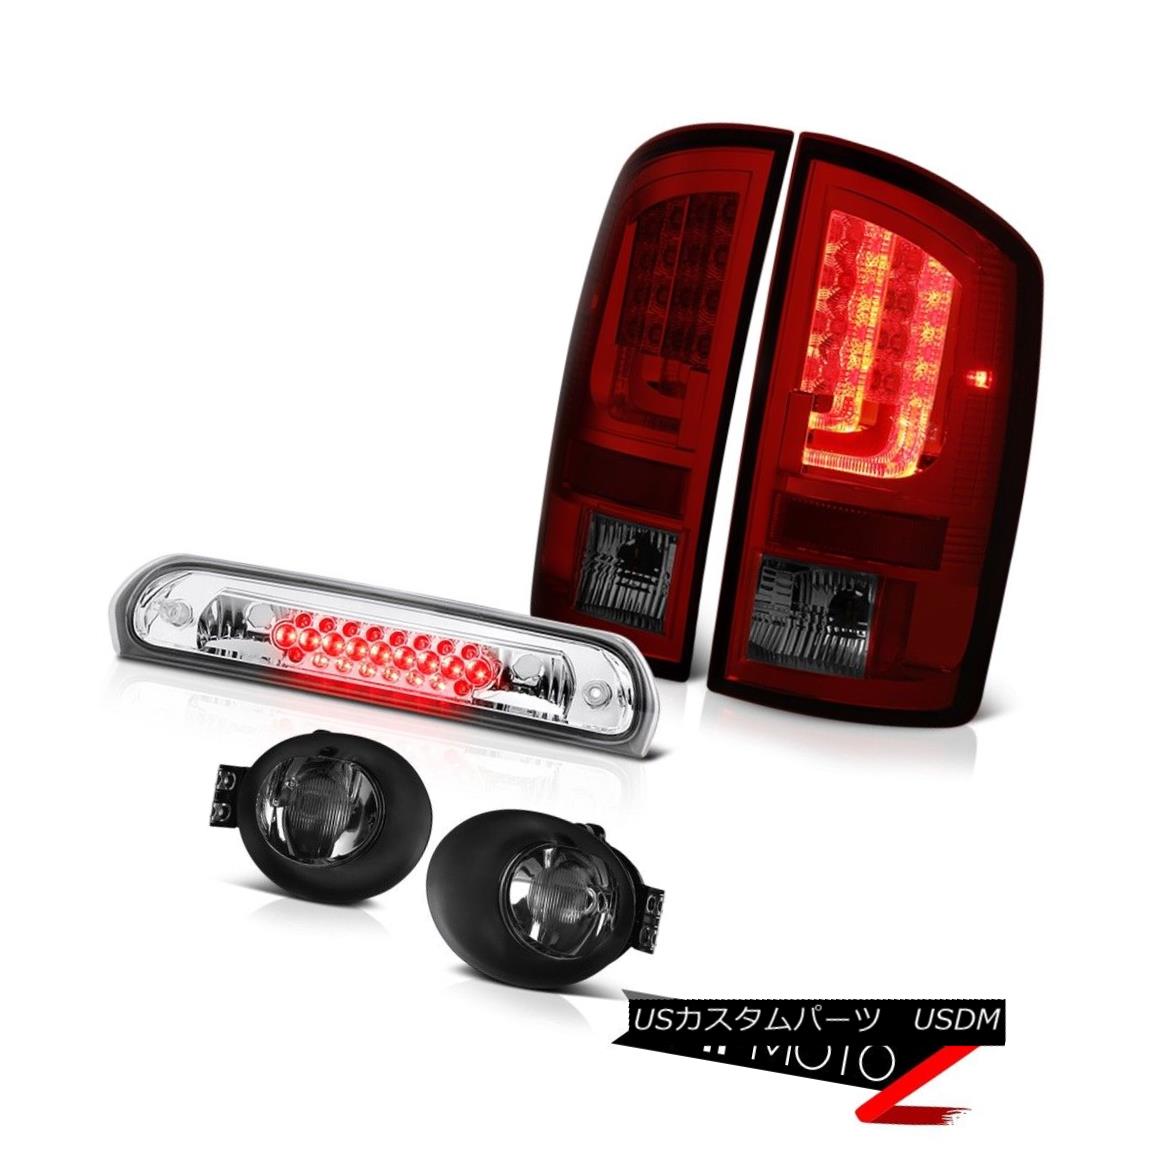 2003-2006 Dodge Ram 1500 5.7L Rear Brake Lamps Fog Chrome Roof Light "Lava Tube"カテゴリテールライト状態新品メーカーDodge車種Ram 1500発送詳細送料一律 1000円（※北海道、沖縄、離島は省く）商品詳細輸入商品の為、英語表記となります。 Condition: New Brand: Venom Inc. [Headlight] Side: Driver&Passenger Side Provided Manufacturer Part Number: OEM#B0902H_2002_2003_2004_2005_2006_A310 [Tail Light] Brake: Built-In LED Interchange Part Number: 55077348AF/55077347AF, 55077475AE/474AE, 5072594AD [Tail Light] Dashboard Light: Error-Free Other Part Number: CH2801147/CH2800147CH2592121/CH2593121 [Tail Light] Parking: Built-In Neon Tube Placement on Vehicle: Left, Right, Front, Rear [Tail Light] Reverse: Re-use Original 3157 Bulbs Warranty: 60 Day [Tail Light] Side: Driver & Passenger Included [Fog Light] Wiring: [Fog Light] Wiring [Tail Light] Signal: Built-in LED [Fog Light] Switch: [Fog Light] Switch Contact Us: TEL: 1-844-884-7847 | HOURS: 9am - 6pm PST [Fog Light] Bulbs: [Fog Light] Bulbs Returns: 60-Days LOVE IT or RETURN IT!※以下の注意事項をご理解頂いた上で、ご入札下さい※■海外輸入品の為、NC,NRでお願い致します。■フィッテングや車検対応の有無については、画像と説明文よりお客様の方にてご判断をお願いしております。■USのカスタムパーツは国内の純正パーツを取り外した後、接続コネクタが必ずしも一致するとは限らず、加工が必要な場合がございます。■商品説明文中に英語にて”保障”に関する記載があっても適応はされませんので、ご理解ください。■初期不良（到着より7日以内）のみ保証対象とします。ただし、取り付け後は、保証対象外とします。■海外倉庫から到着した製品を、再度国内で検品を行い、日本郵便または佐川急便にて発送となります。■お届けまでには、2〜3週間程頂いております。ただし、天候次第で多少遅れが発生する場合もあります。■商品落札後のお客様のご都合によるキャンセルはお断りしておりますが、商品落札金額の30％の手数料をいただいた場合のみお受けいたします。■他にもUSパーツを多数出品させて頂いておりますので、ご覧頂けたらと思います。■USパーツの輸入代行も行っておりますので、ショップに掲載されていない商品でもお探しする事が可能です!!お気軽にお問い合わせ下さい。&nbsp;